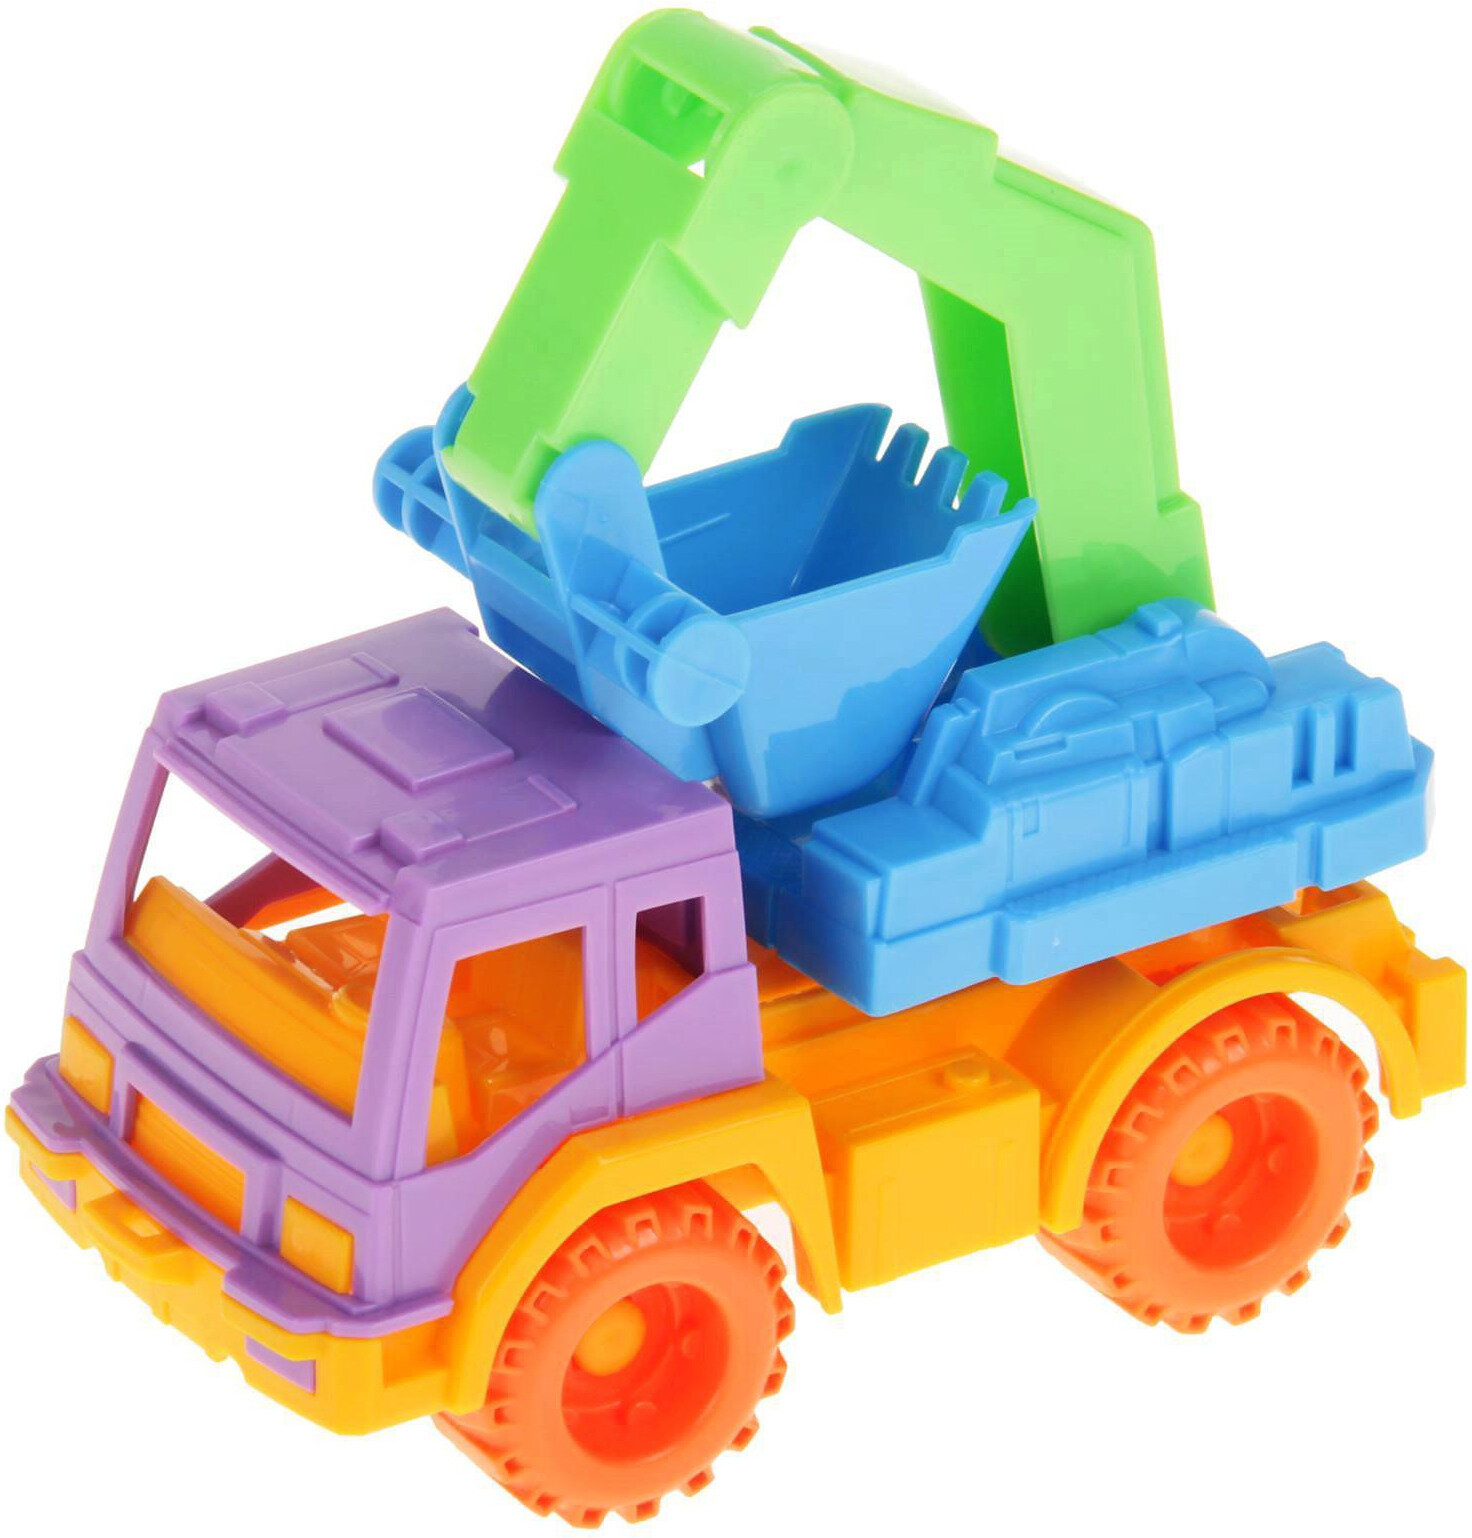 Пластиковая модель Экскаватор "Кама" для детей, игрушка для песочницы и дома